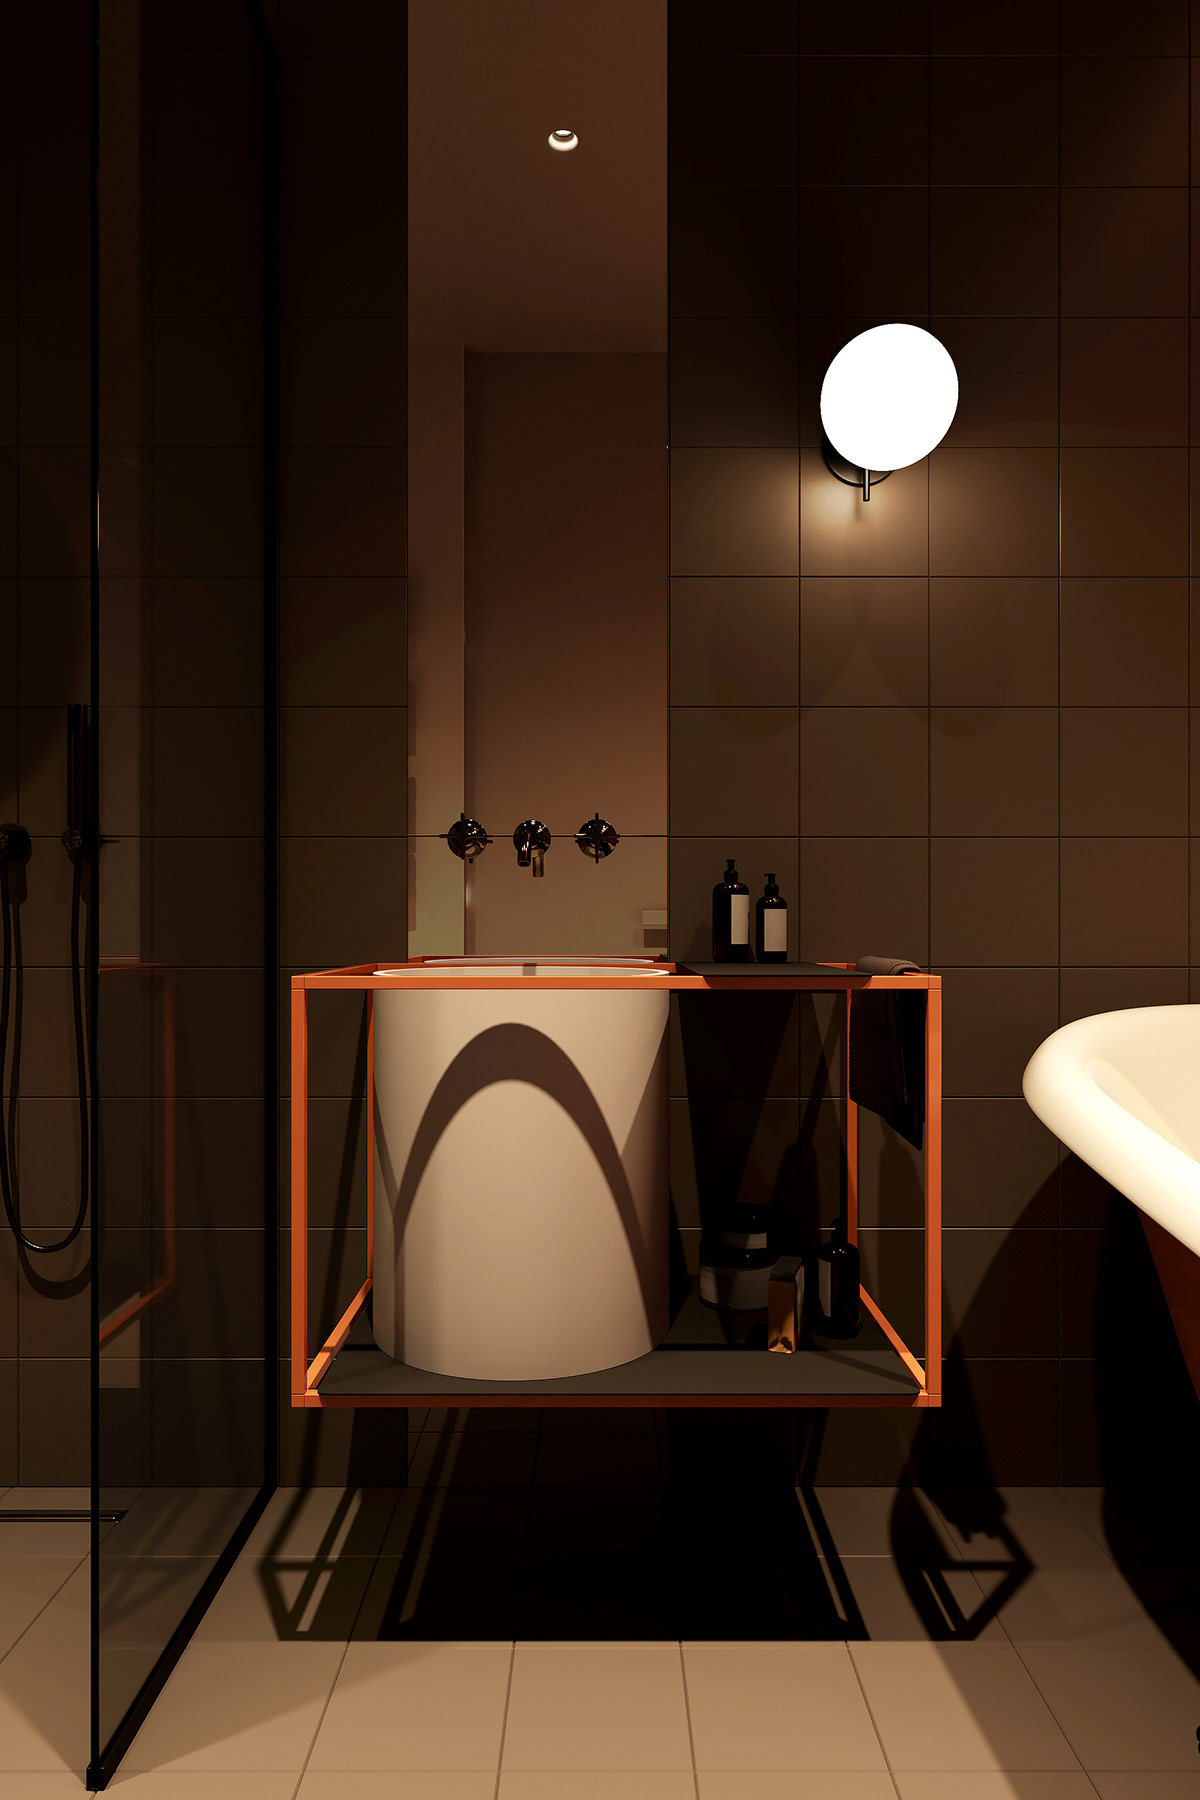 Ngoài ra, căn hộ còn có một phòng tắm riêng tư tích hợp trong phòng ngủ với thiết kế phần khung kim loại sơn màu cam sáng nâng đỡ bồn rửa màu trắng đẹp mắt.